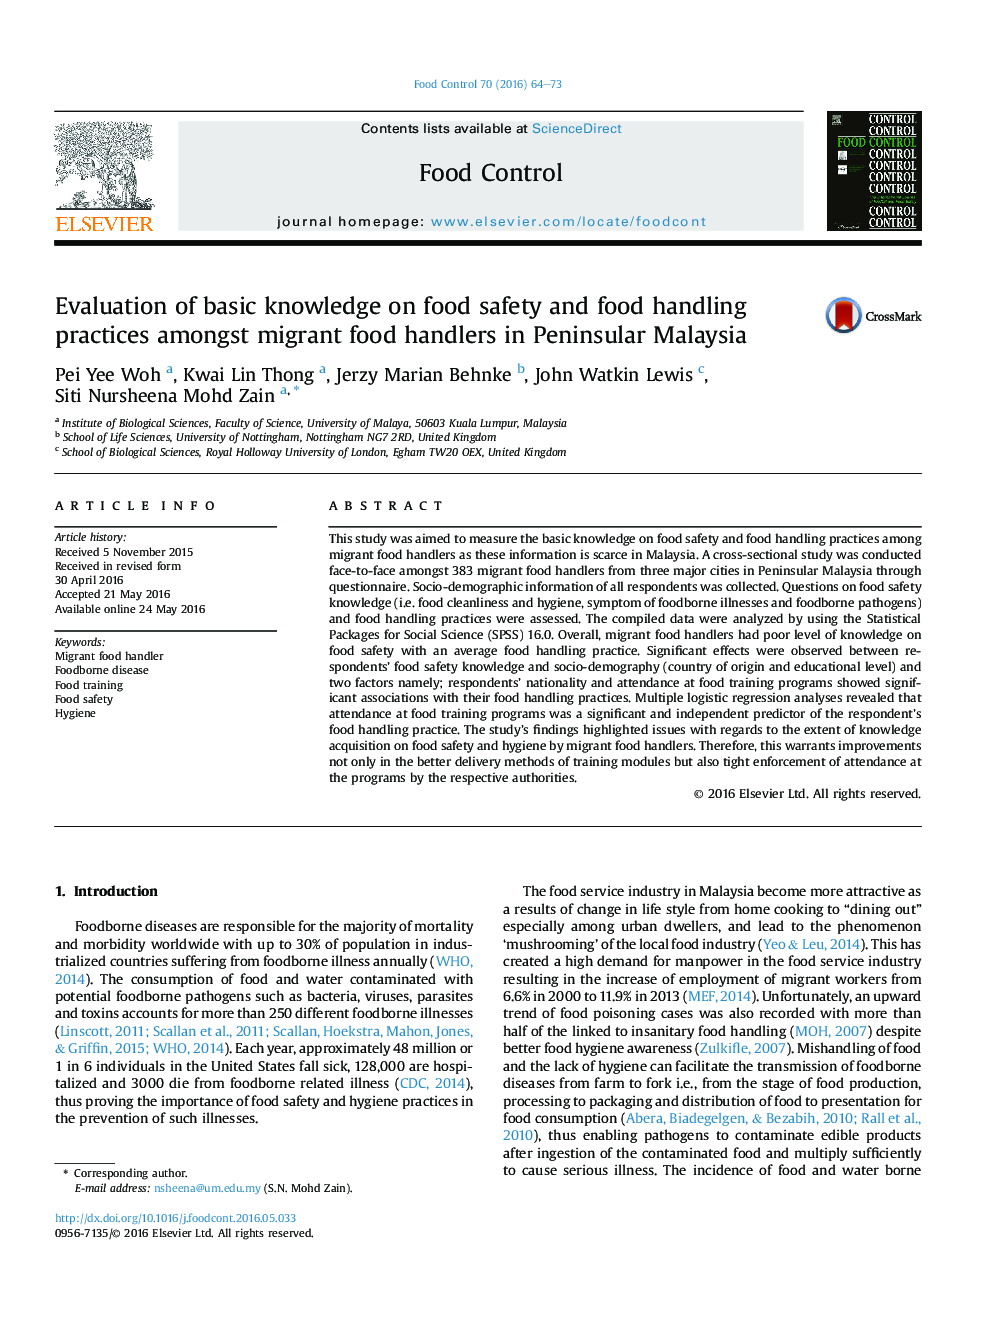 ارزیابی دانش پایه در مورد ایمنی مواد غذایی و شیوه های مدیریت مواد غذایی در میان مواد غذایی مهاجر در مالزی جزیره 